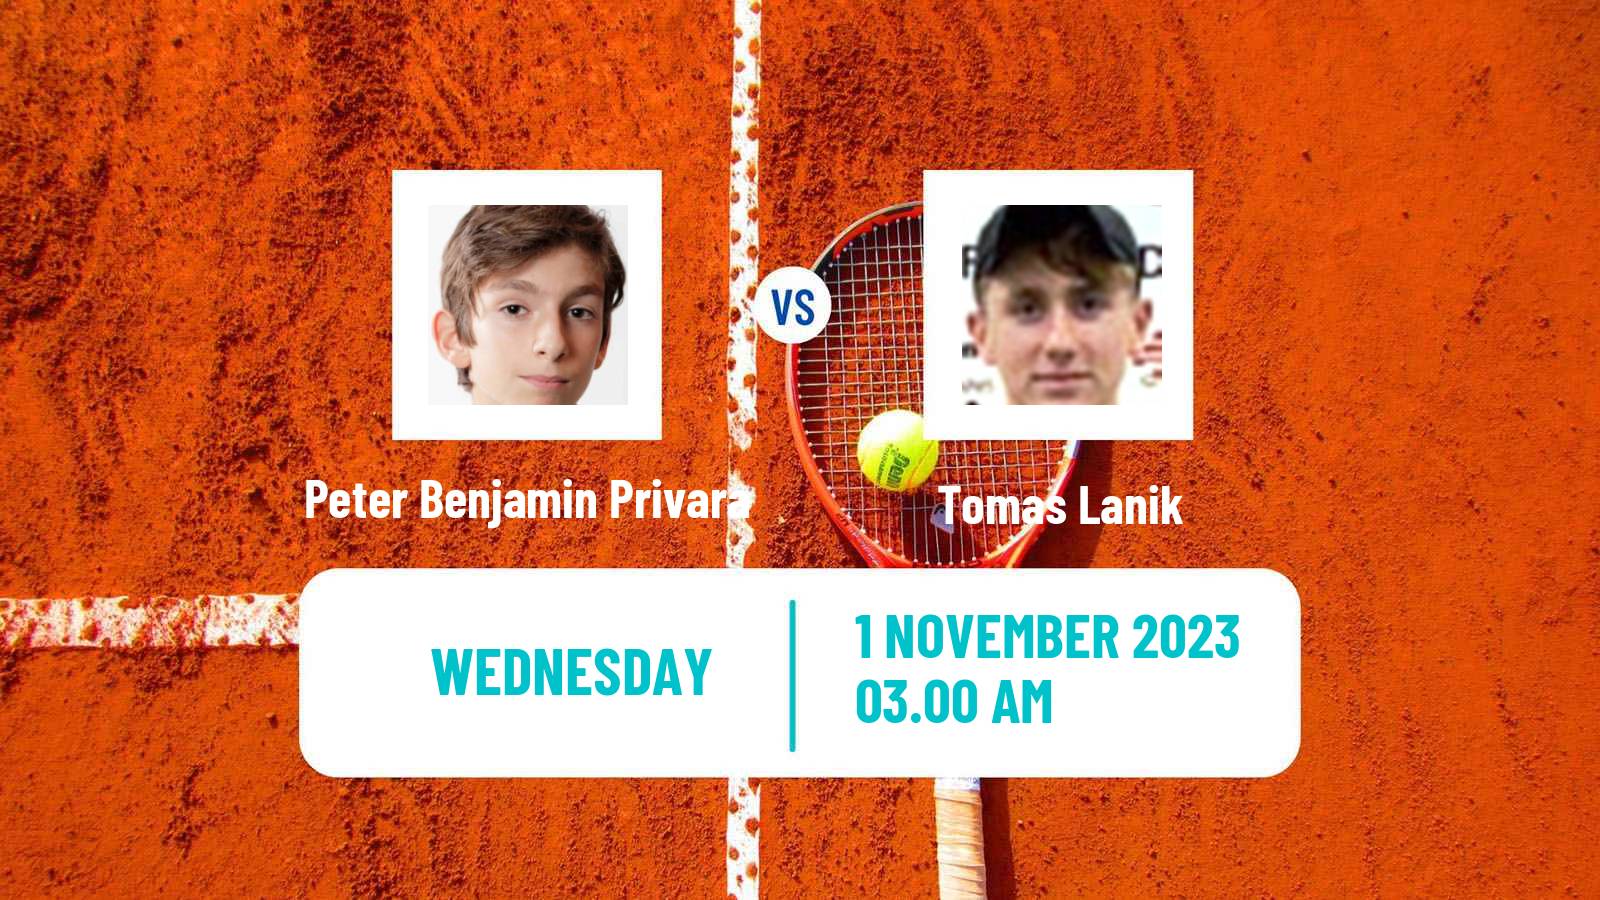 Tennis ITF M15 Al Zahra 3 Men 2023 Peter Benjamin Privara - Tomas Lanik